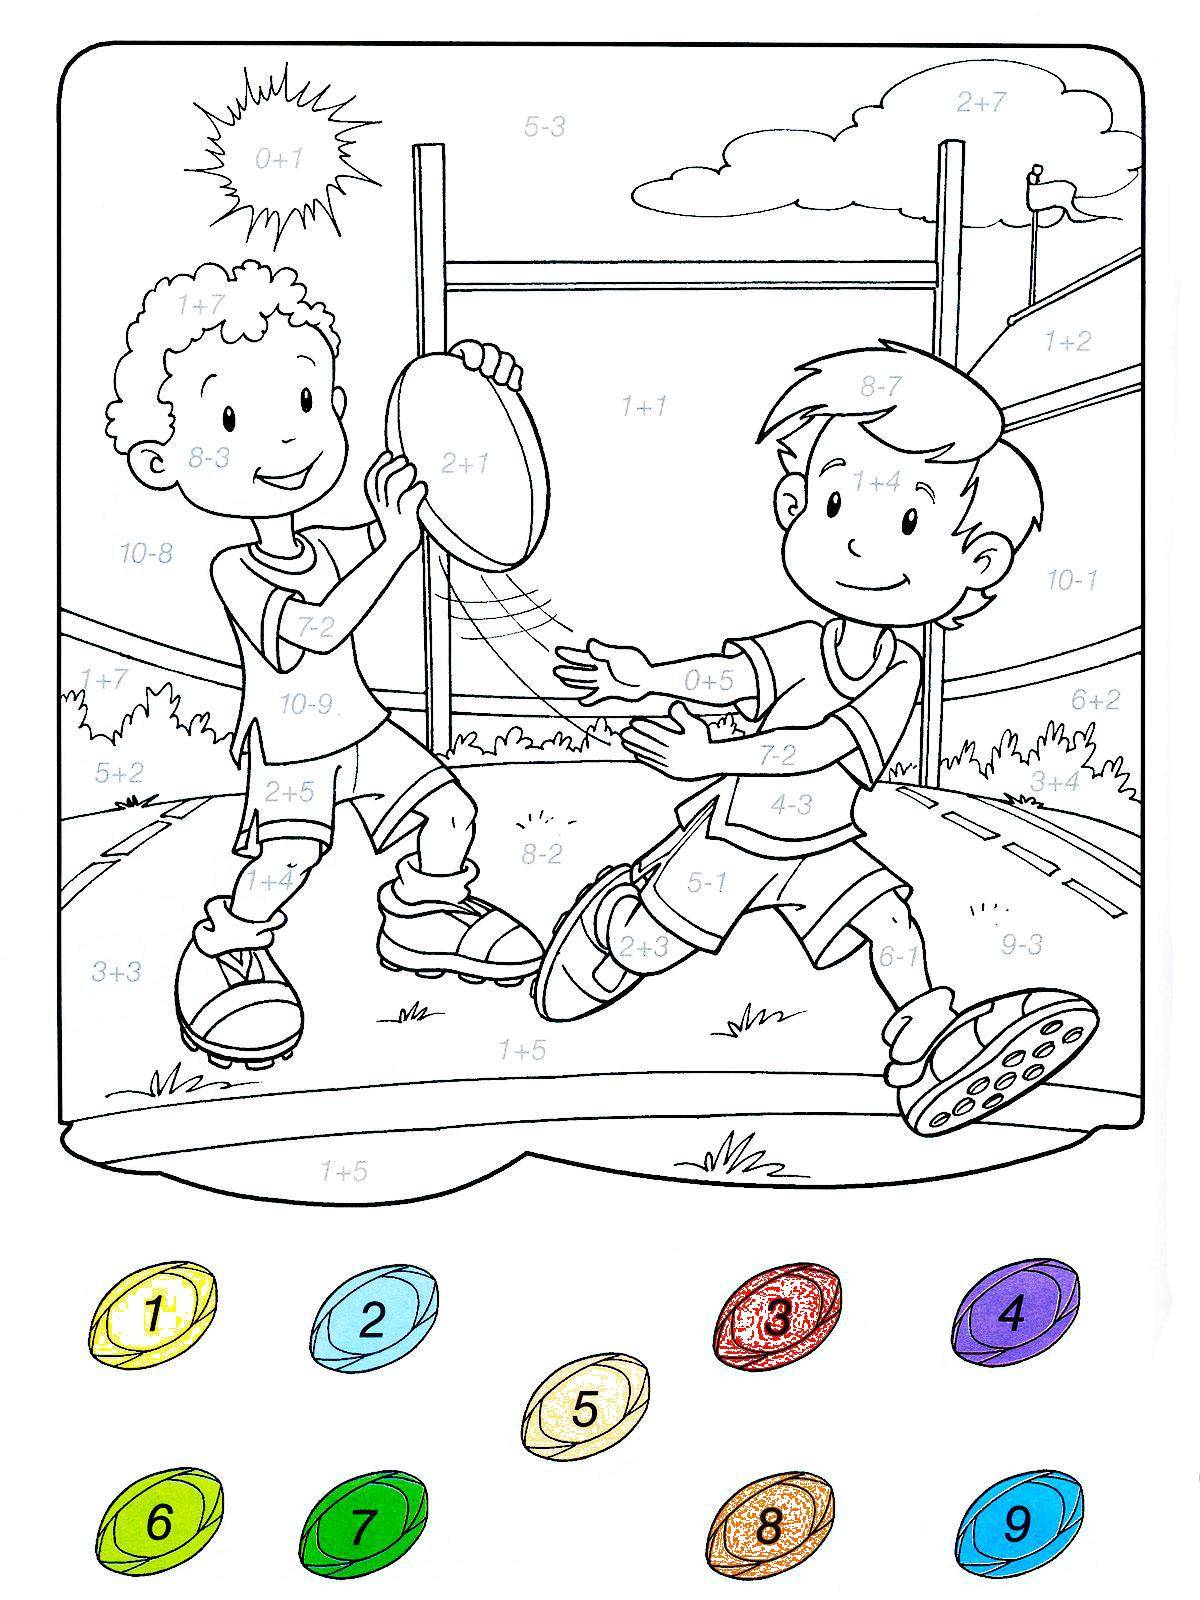 Игры играть детям раскраски. Раскраски. Спортивные раскраски для детей. Игры для детей: раскраски. Раскраска спорт для детей.